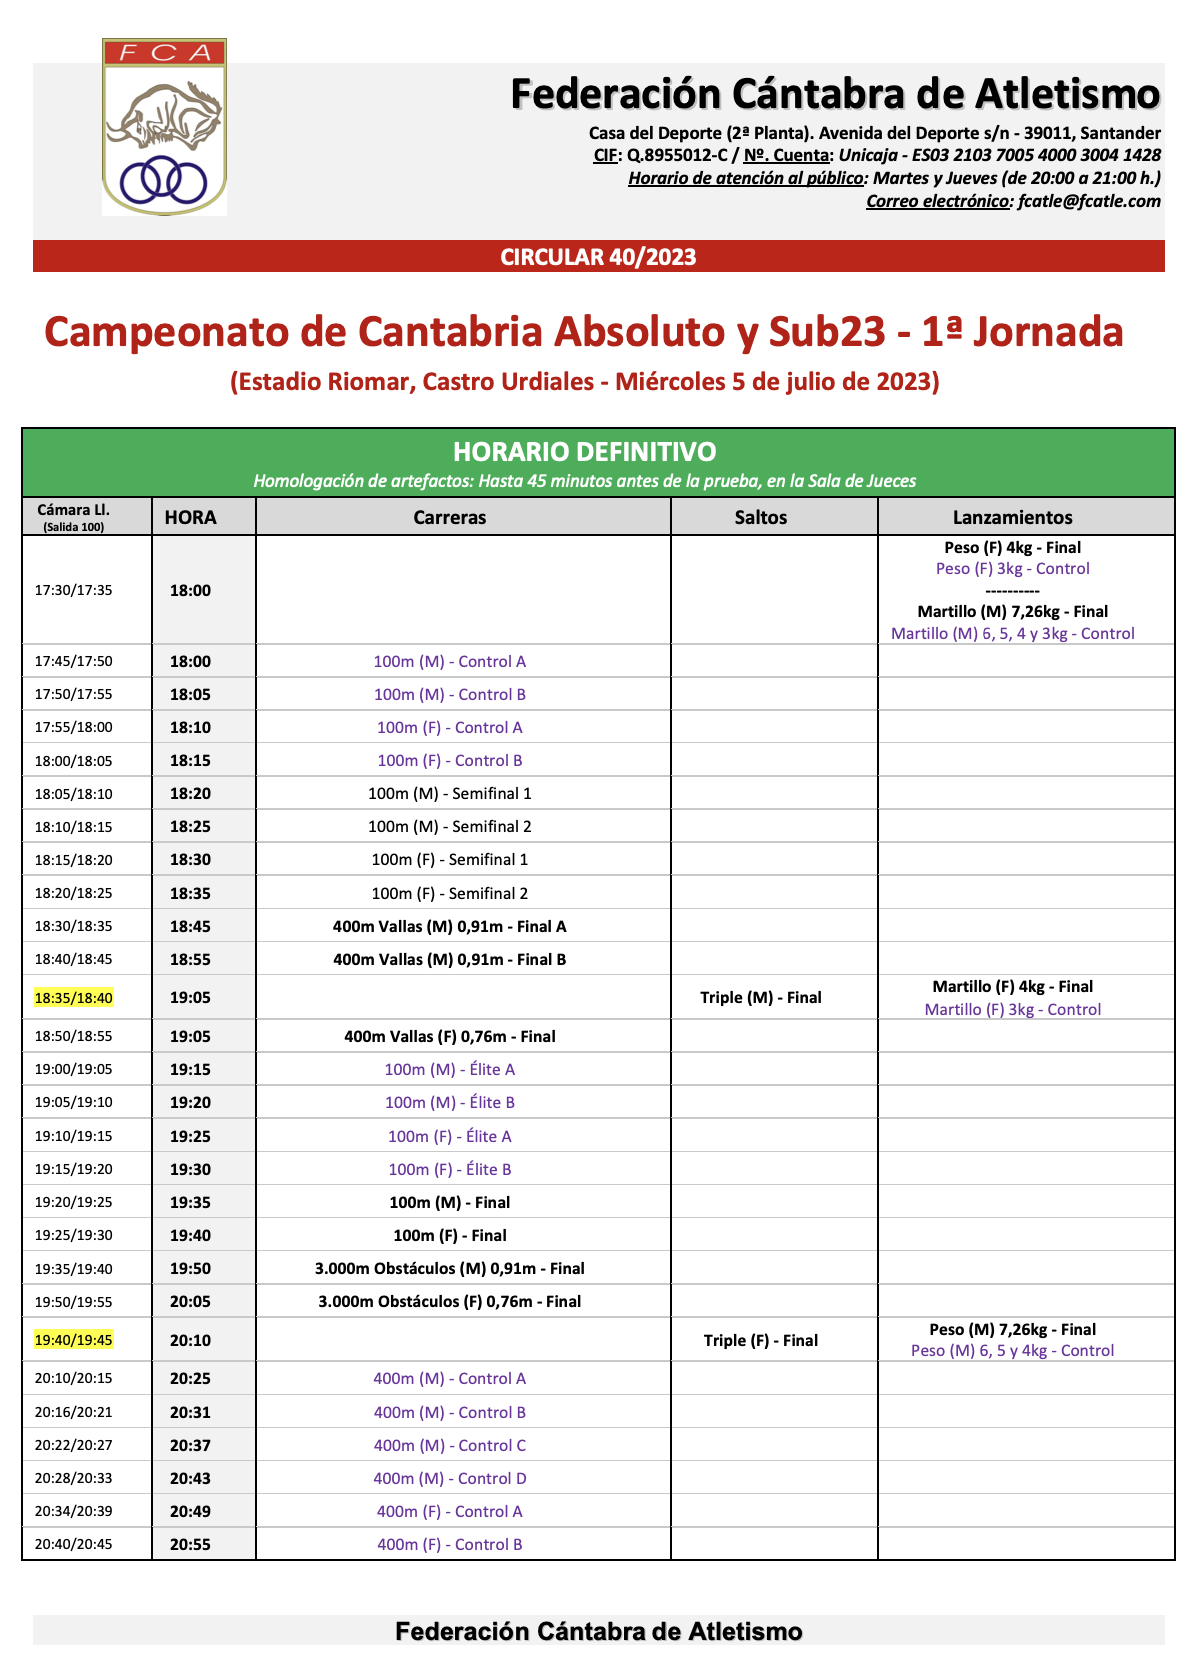 Campeonato de Cantabria Absoluto y Sub23 - 1ª Jornada @ Castro Urdiales, Cantabria